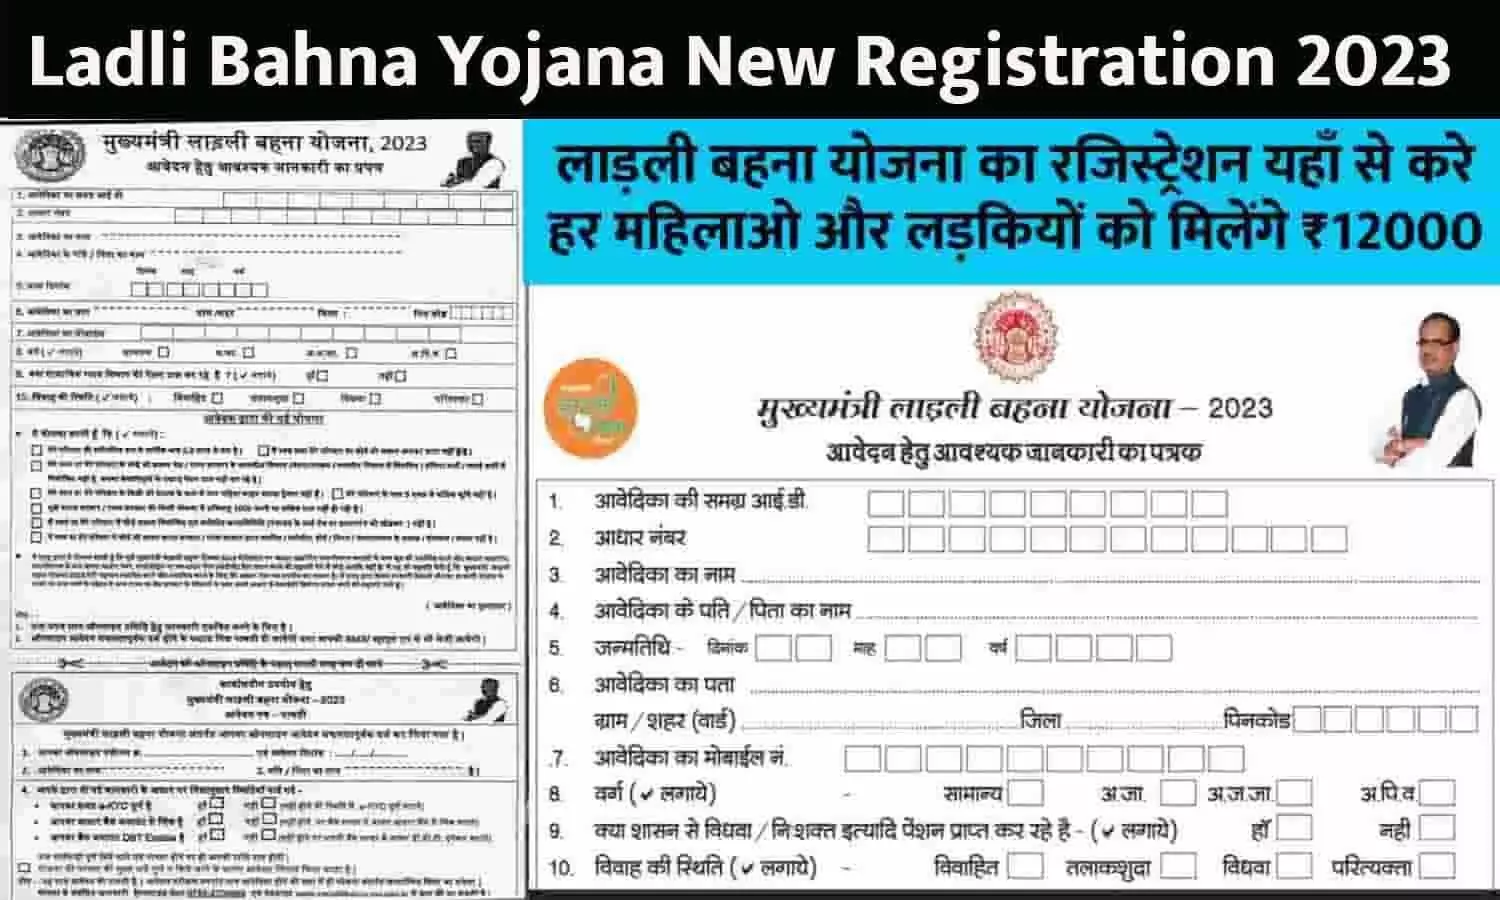 Ladli Bahna Yojana New Registration: आज से लाडली बहना योजना के आवेदन फॉर्म भरना शुरू, ये दस्तावेज रखे तैयार